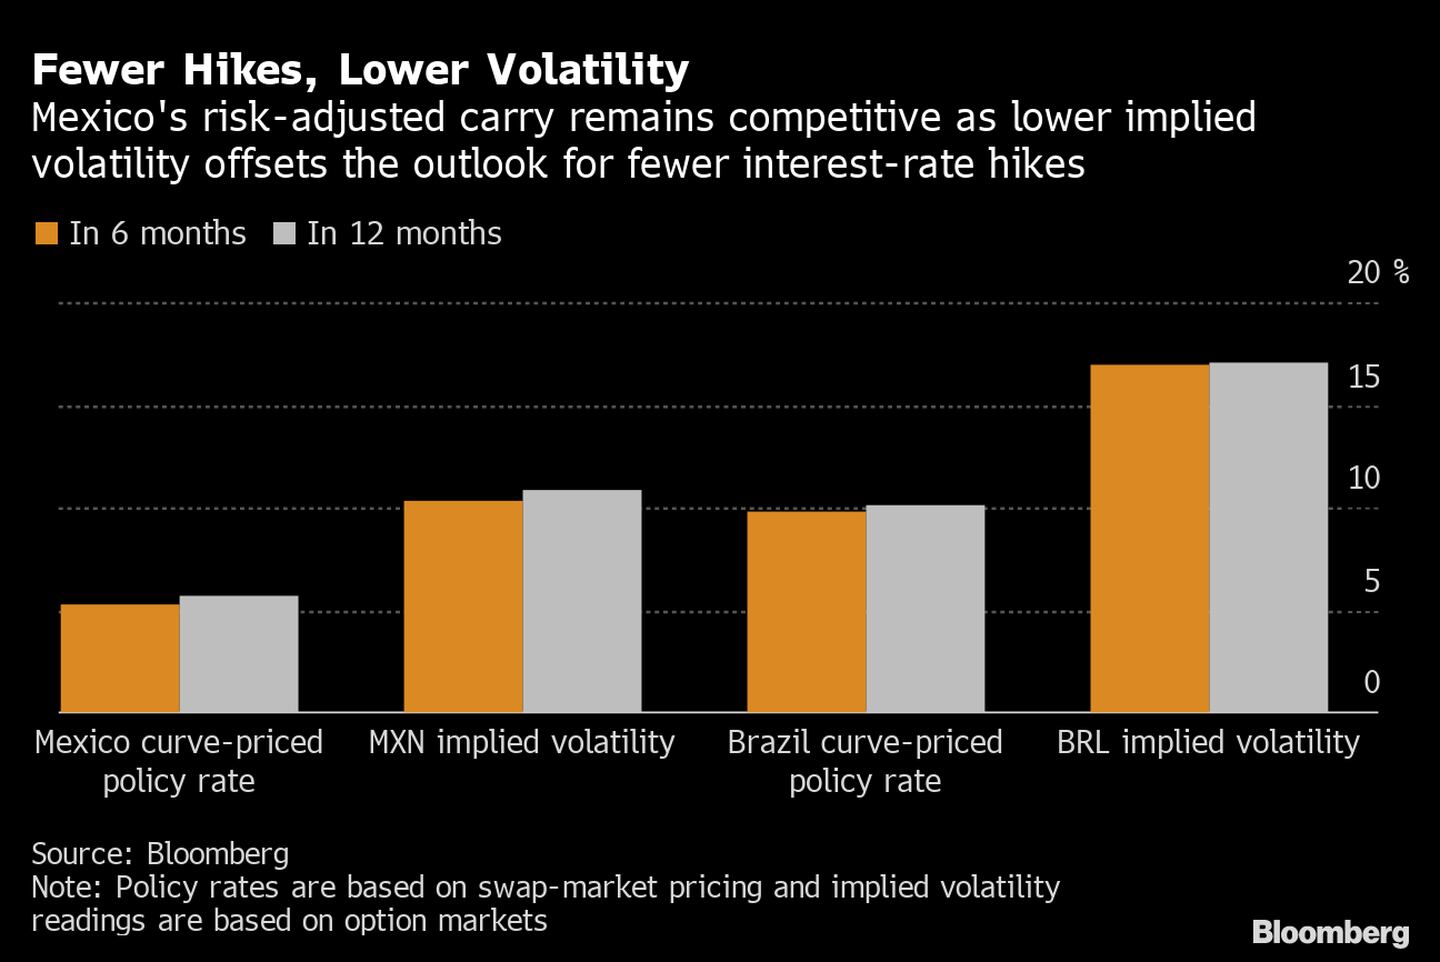 El carry ajustado al riesgo de México sigue siendo competitivo, ya que la menor volatilidad implícita compensa las perspectivas de menos subidas de tasas de interés. dfd